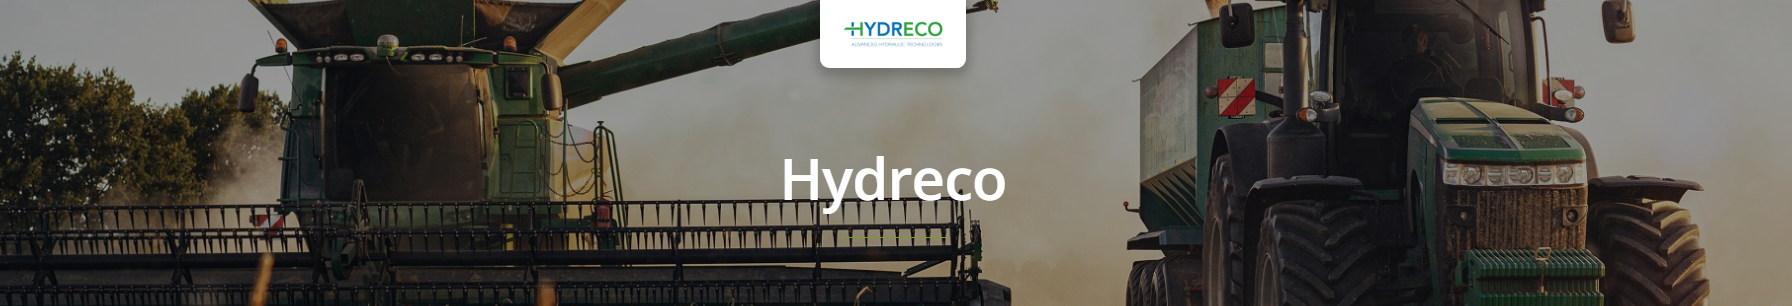 Hydreco Hydraulics Pumps and Motors